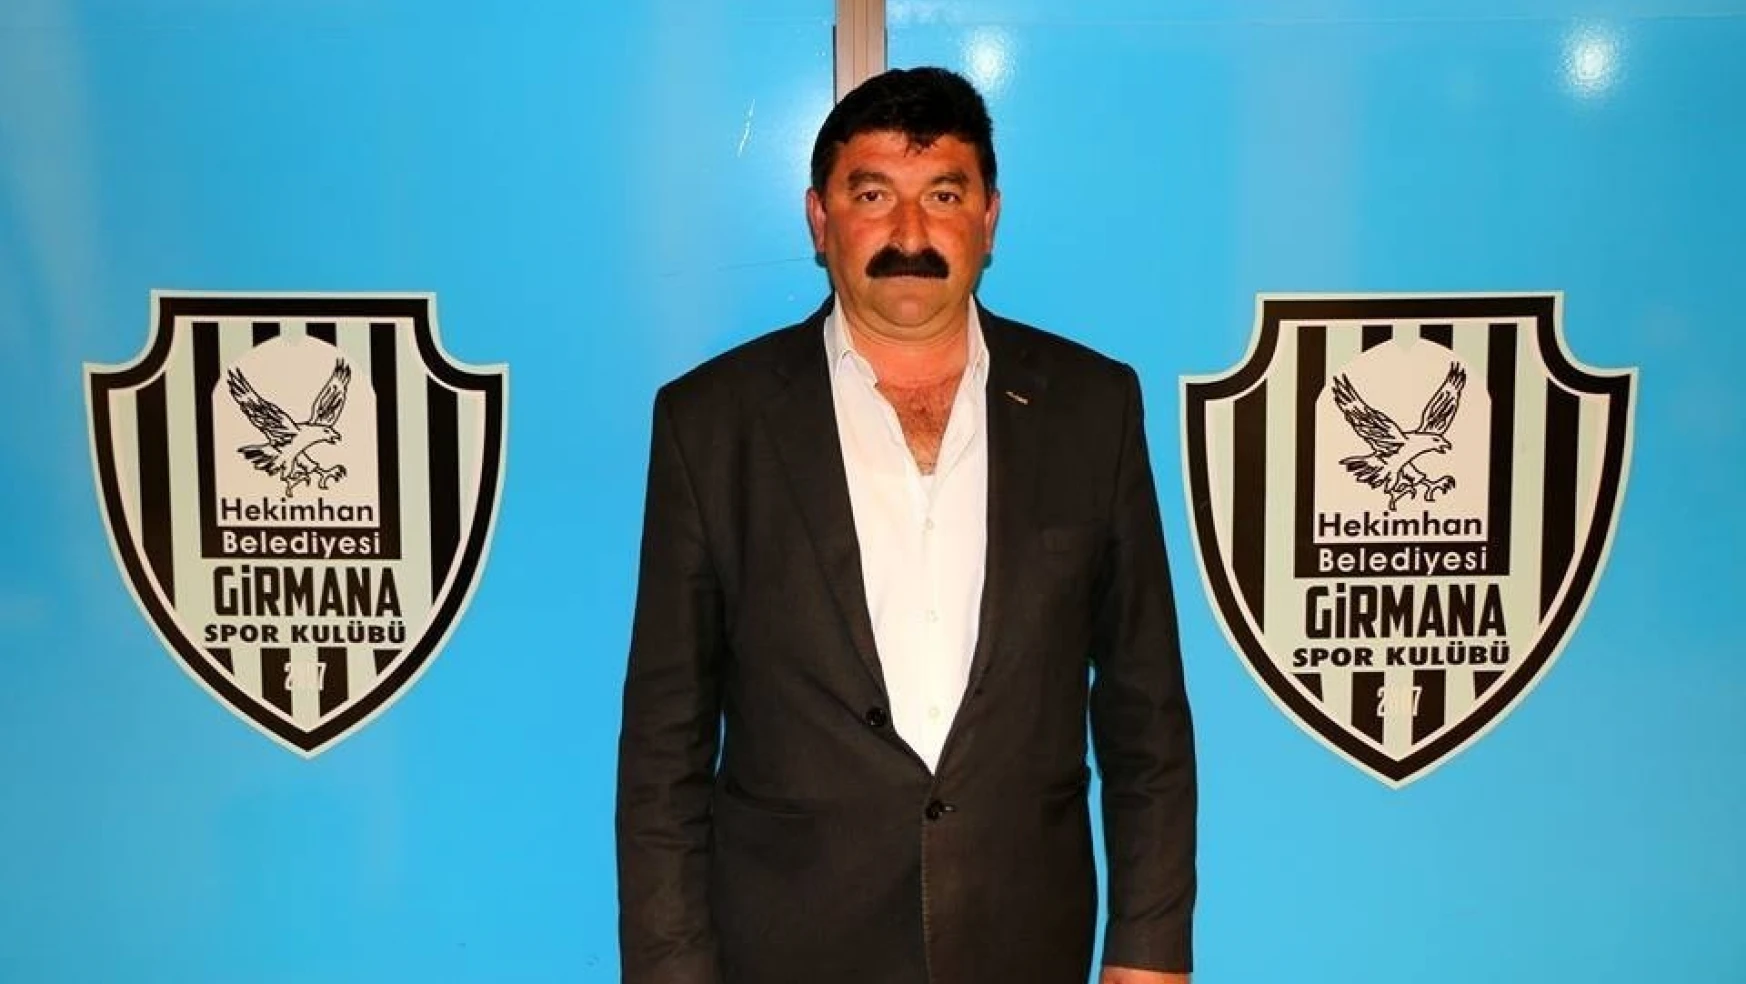 Hekimhan Belediyesi Girmanaspor'da başkanlığa Bülent Çelik seçildi
